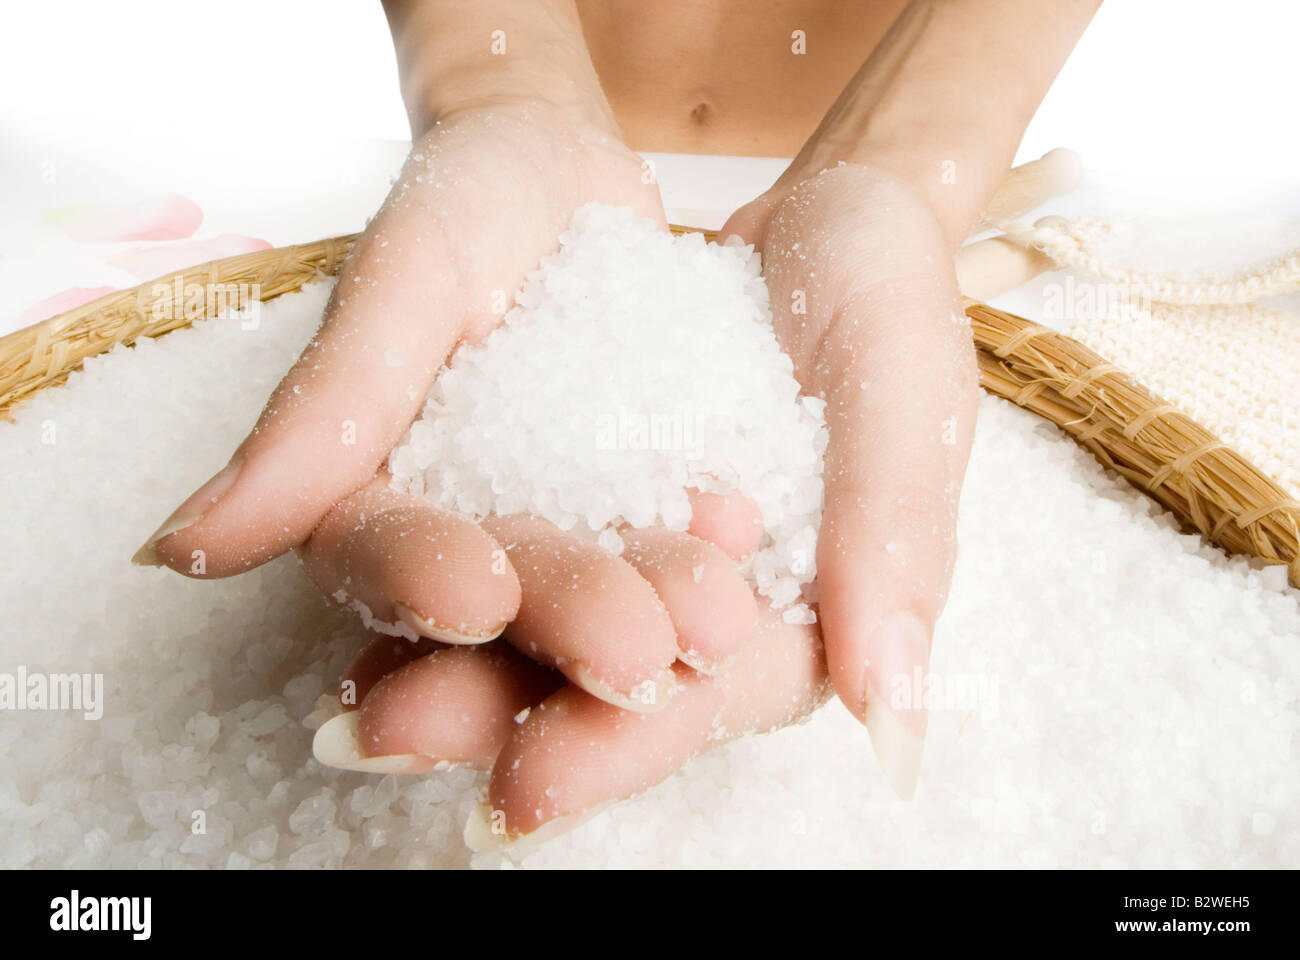 Снежка лечением. Растирание морской солью. Солевые ванны. Соль в руках. Соль для ванны в руке.